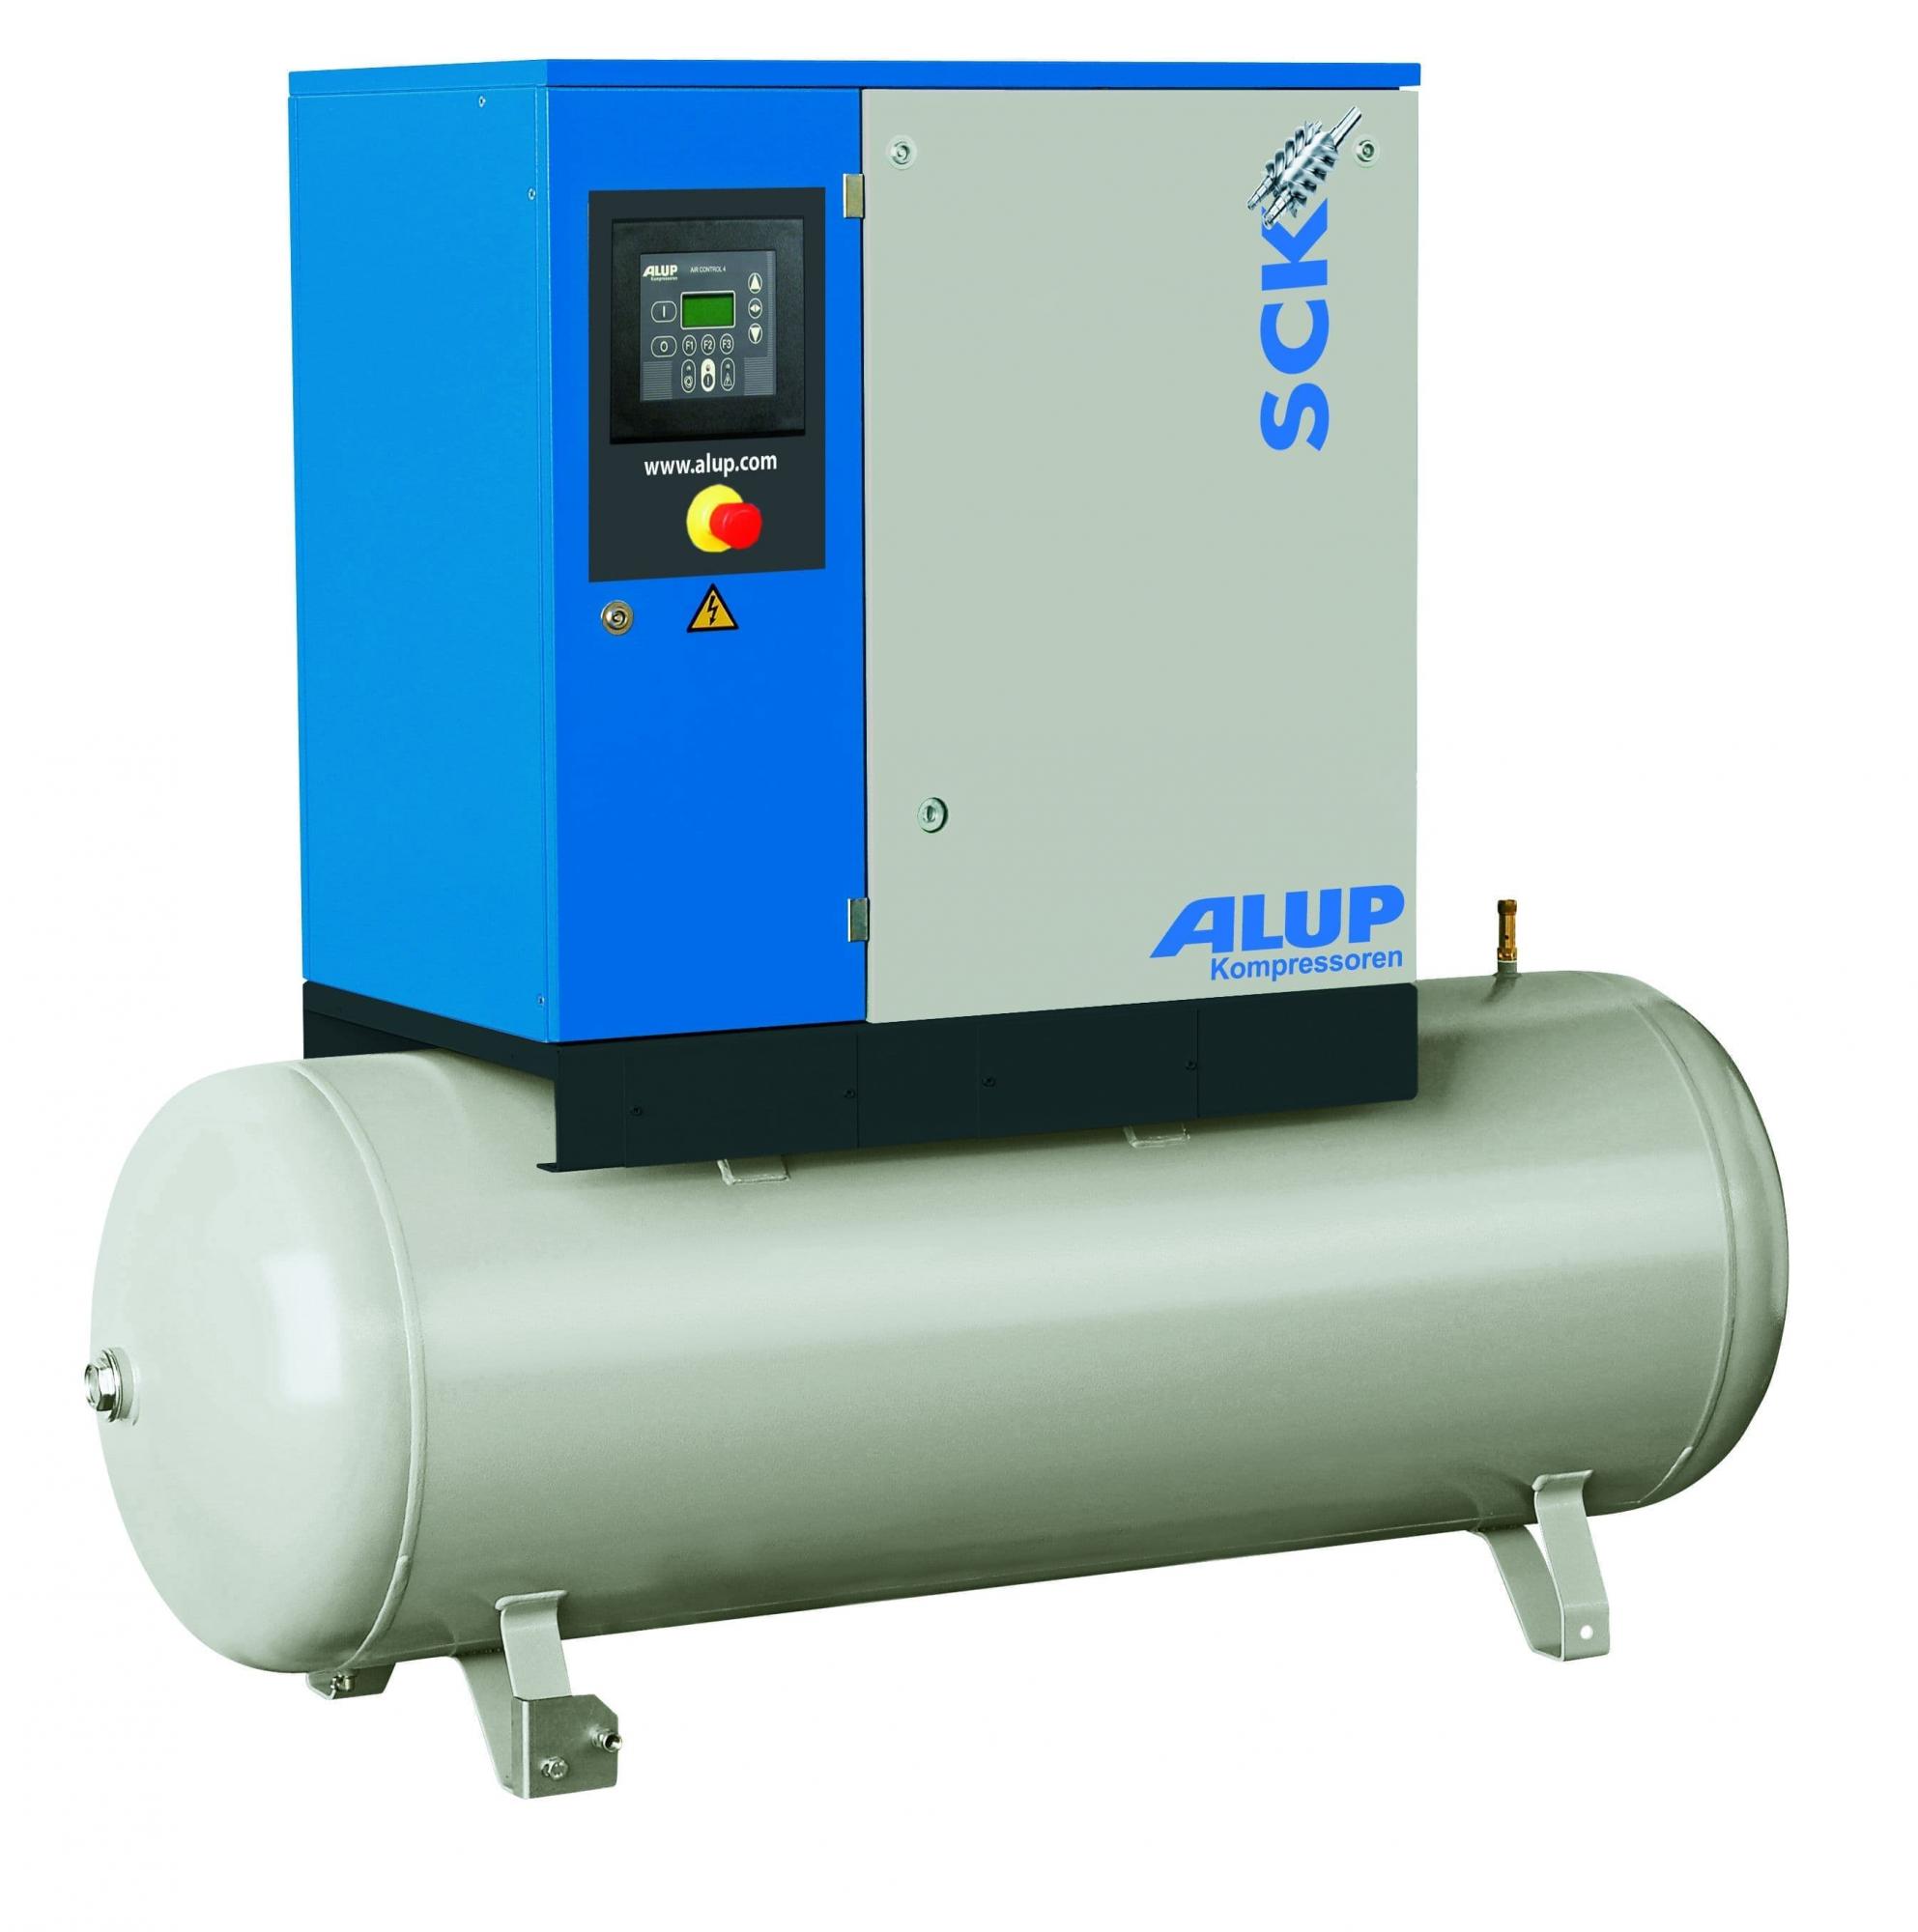  компрессор Alup SCK 15 – 8 бар 500 литров  по выгодным .